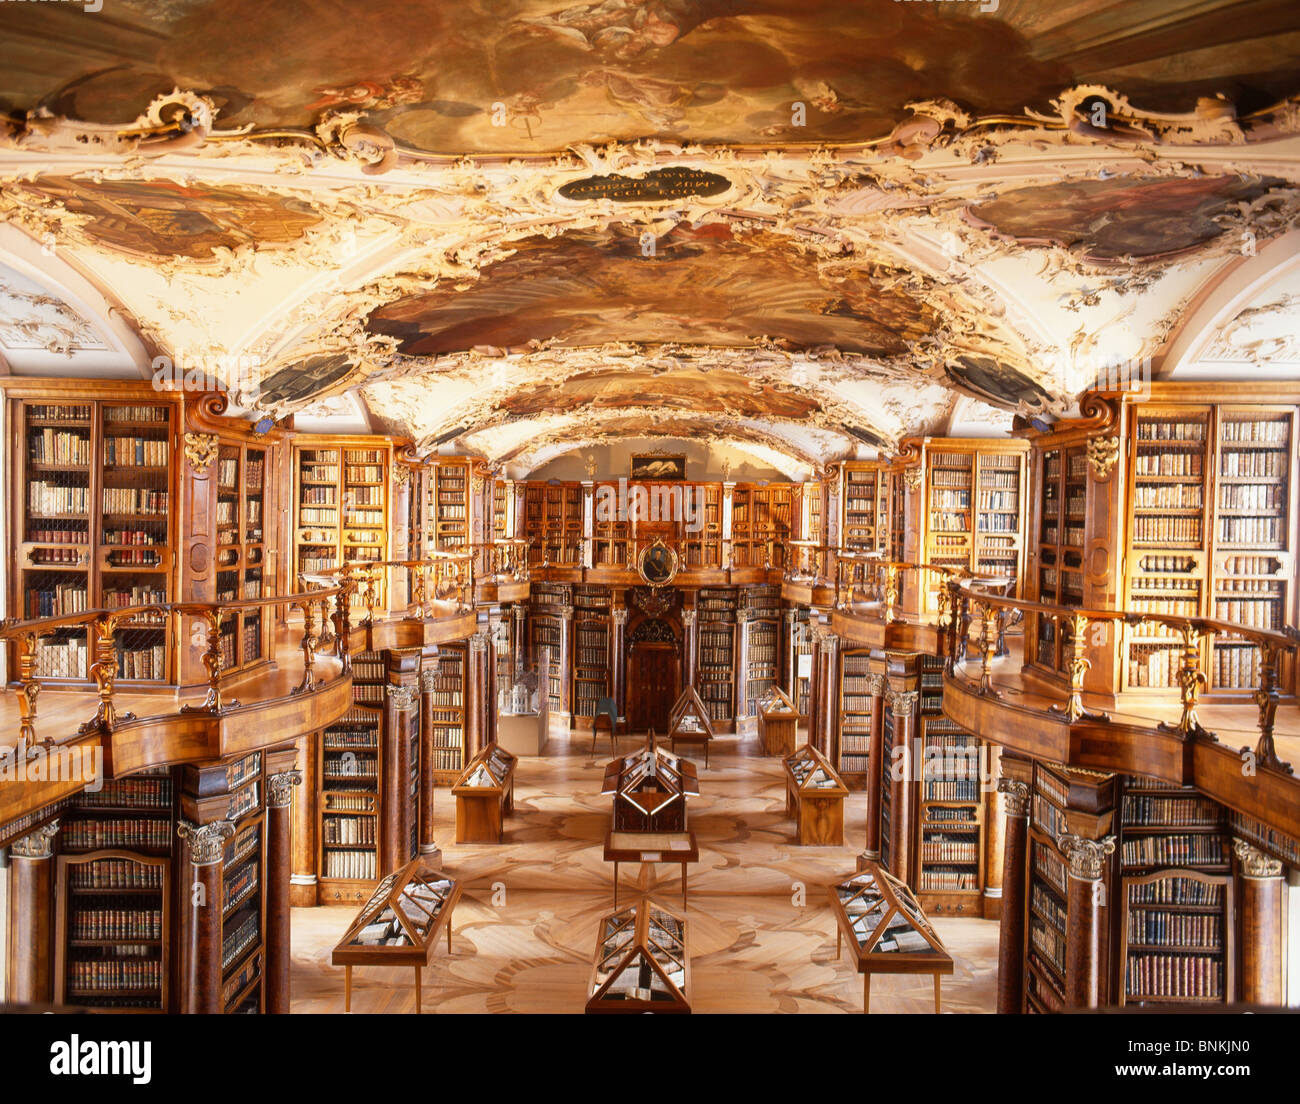 Schweiz-Bibliothek Bleistift Bibliothek Kloster St. Gallen historisch  antike Kultur Bücher Bücherregale Stockfotografie - Alamy